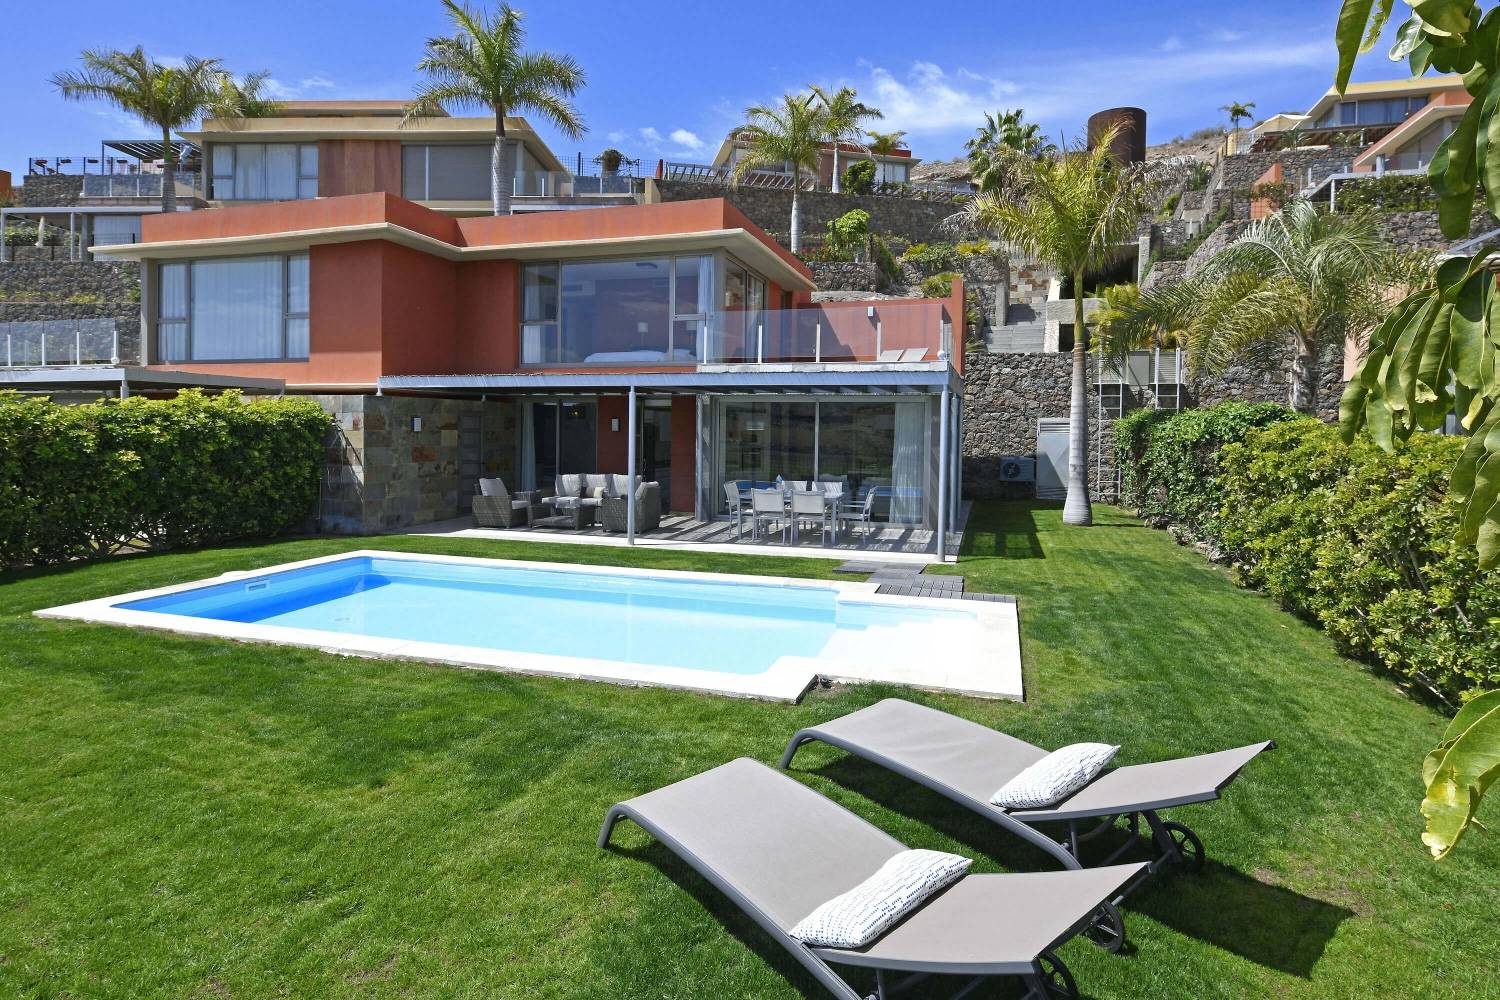 Villa elegante direttamente sul campo da golf con interni moderni, giardino con piscina privata e una splendida vista